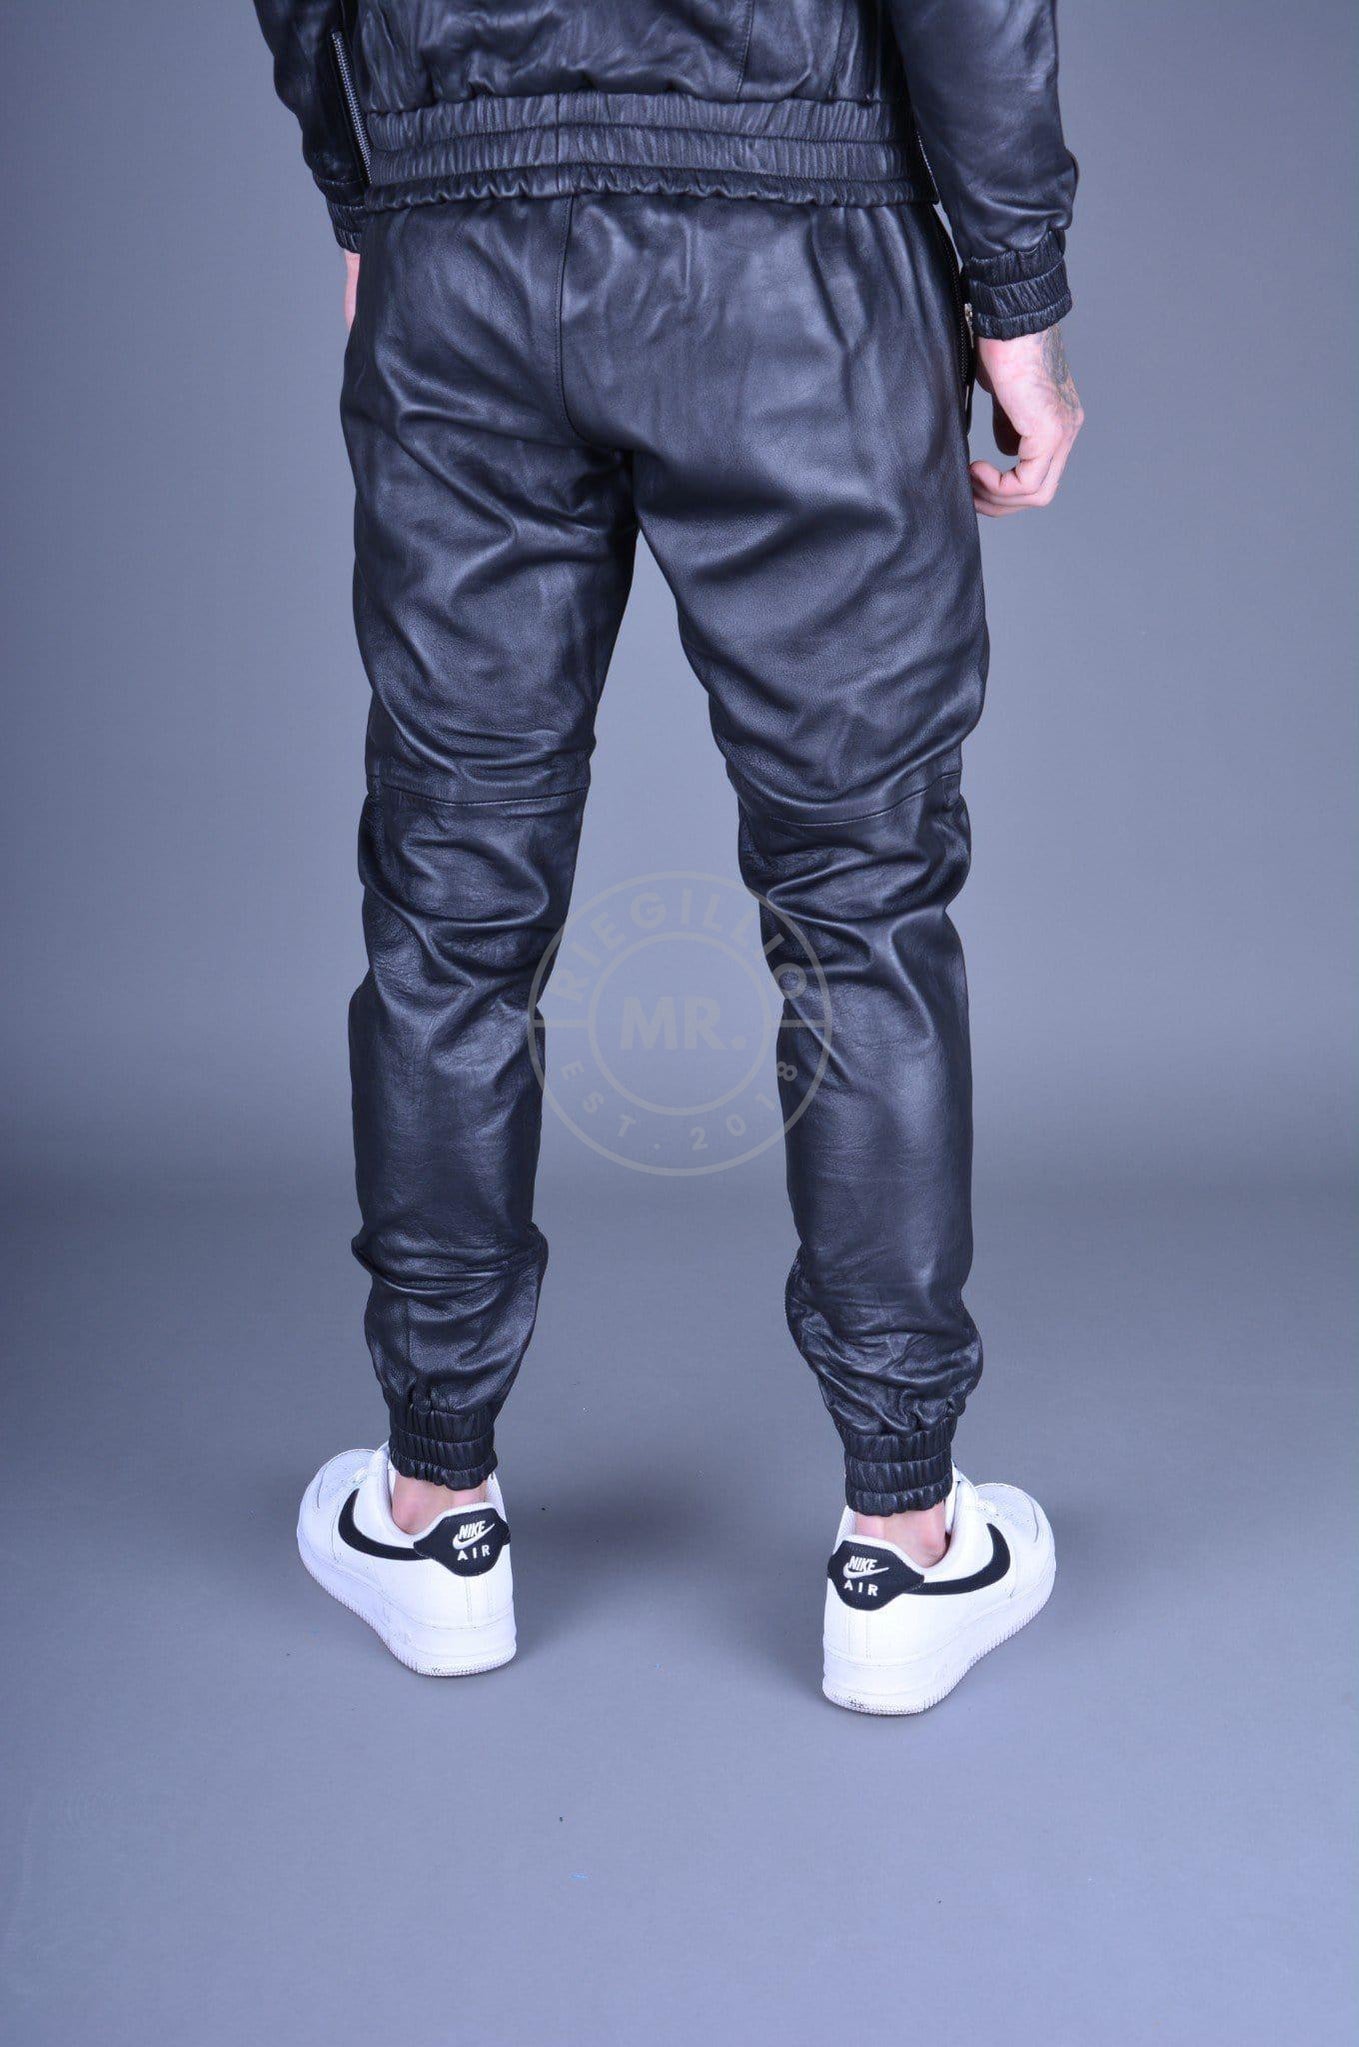 Black Leather Tracksuit Pants at MR. Riegillio